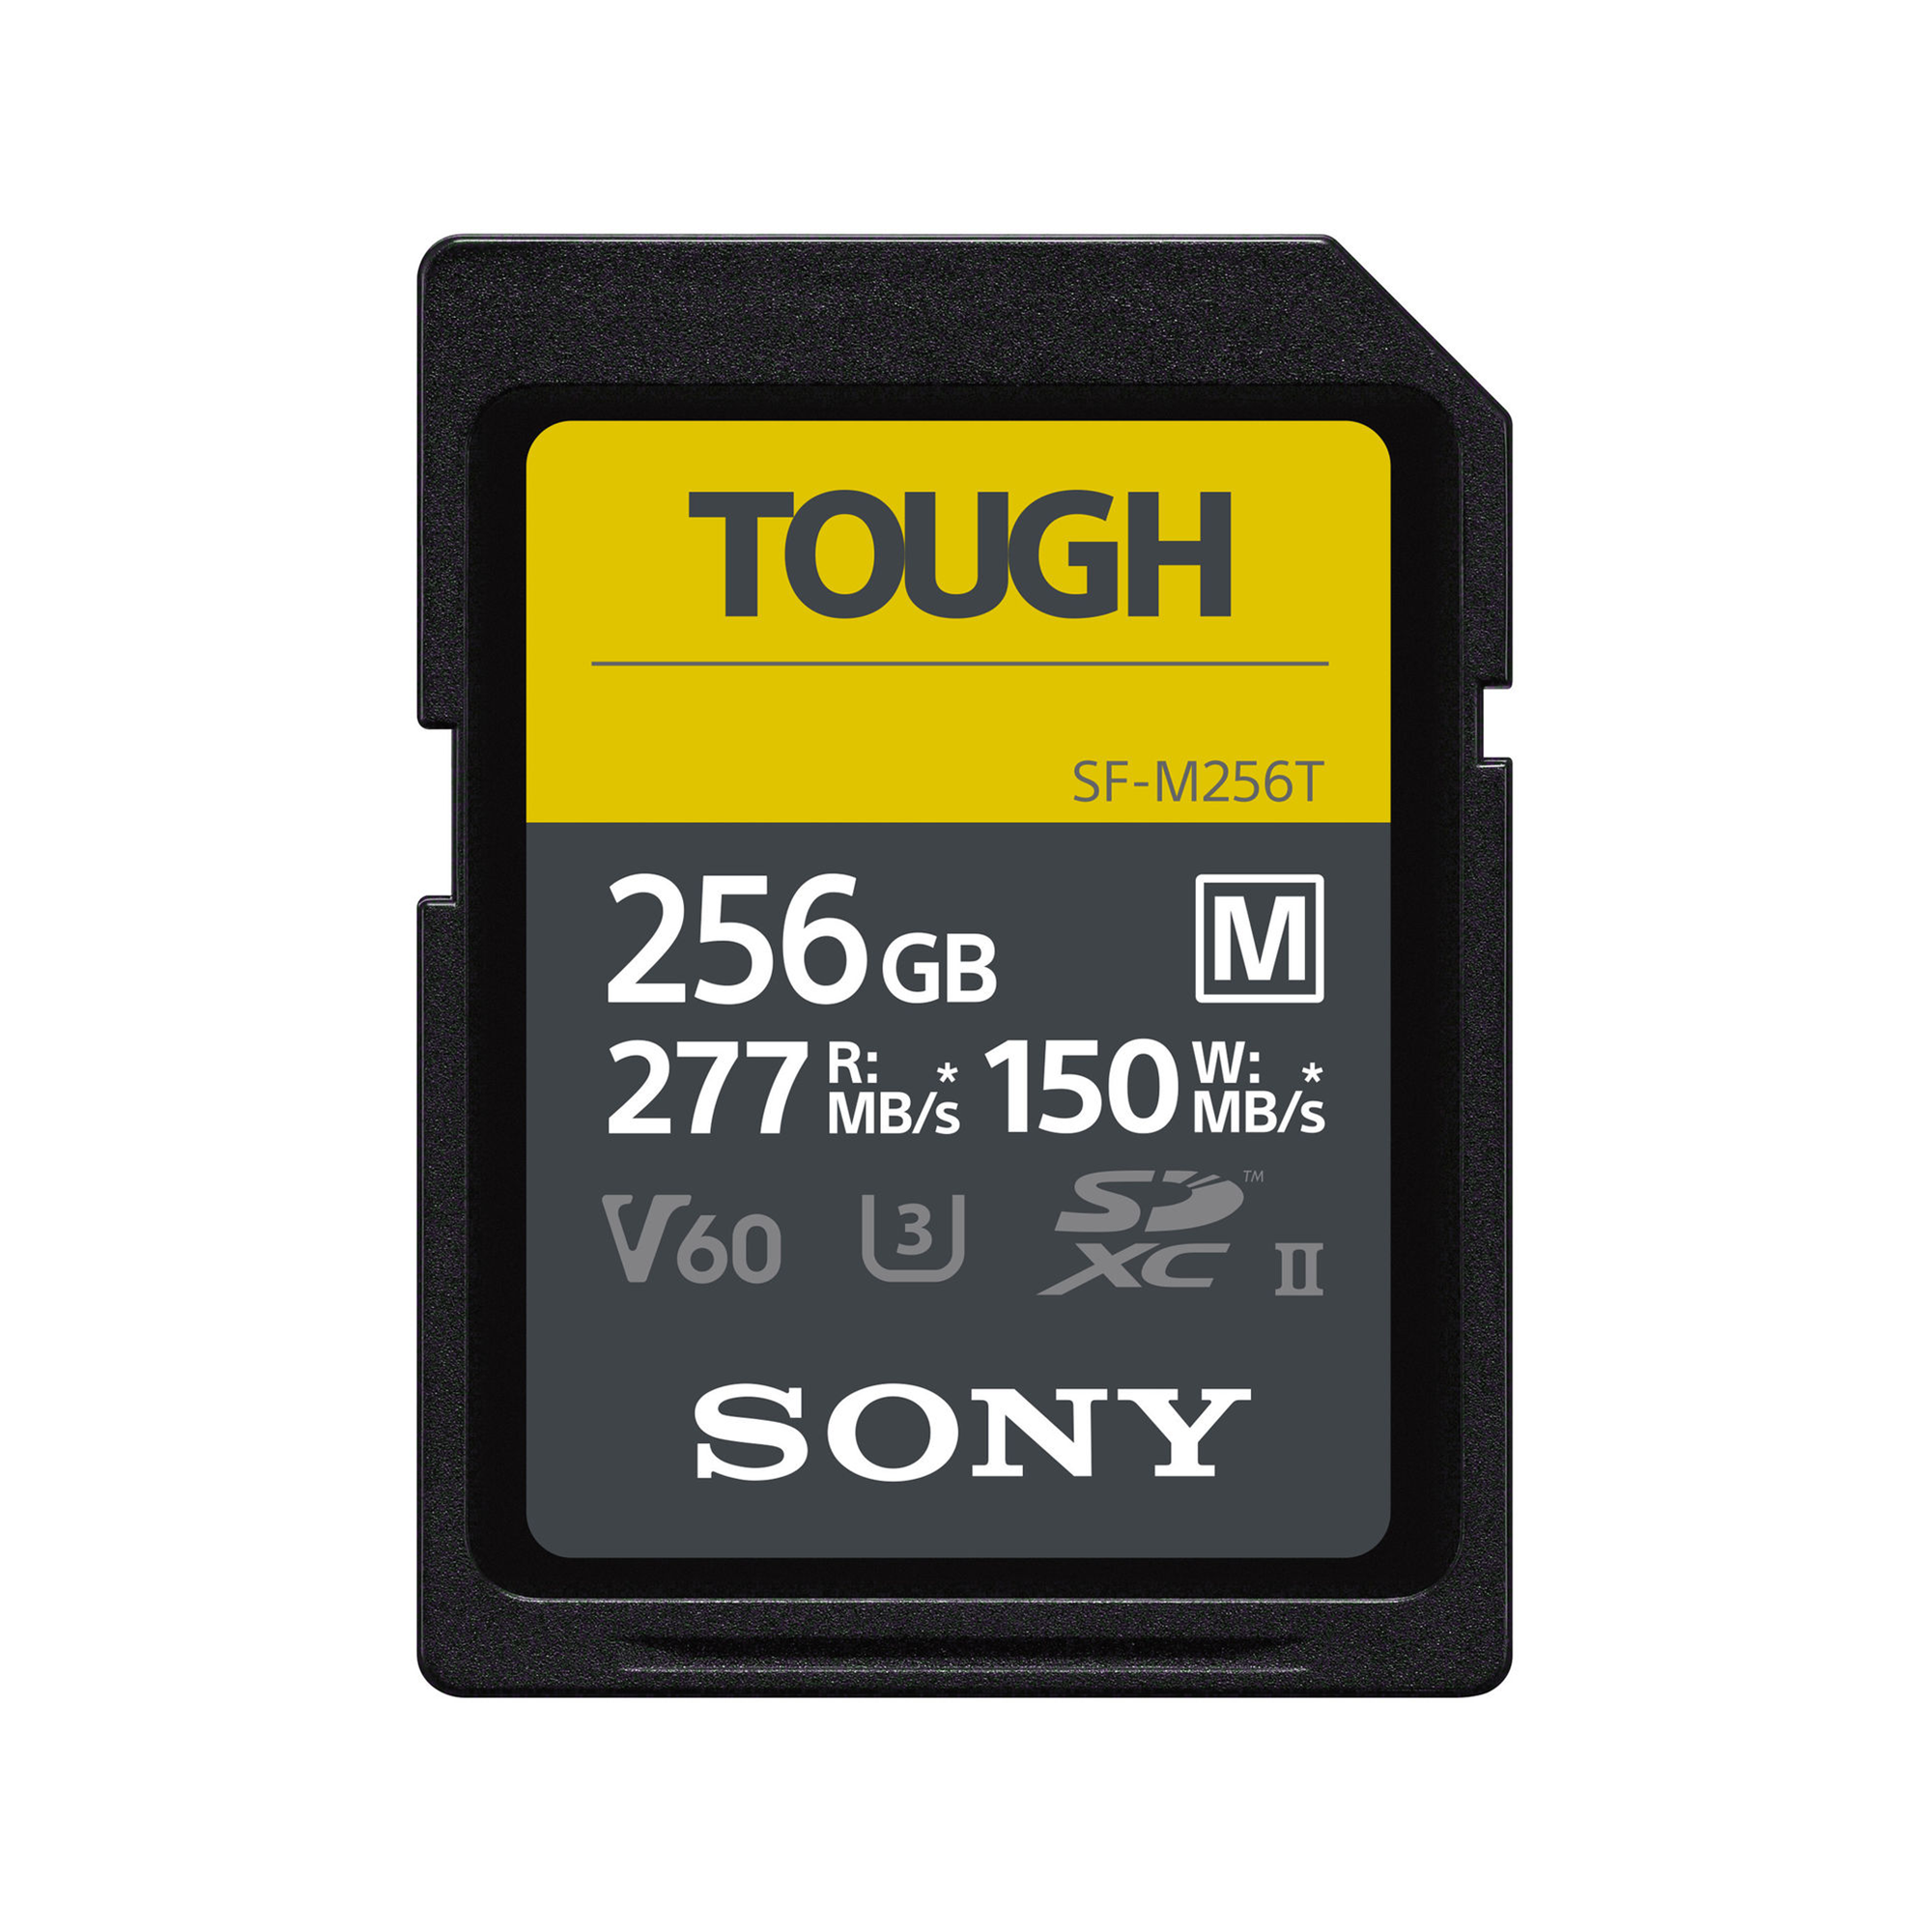 Sony SF-M256GB UHS-II M Tough series CL10_U3 R277/W150 V60